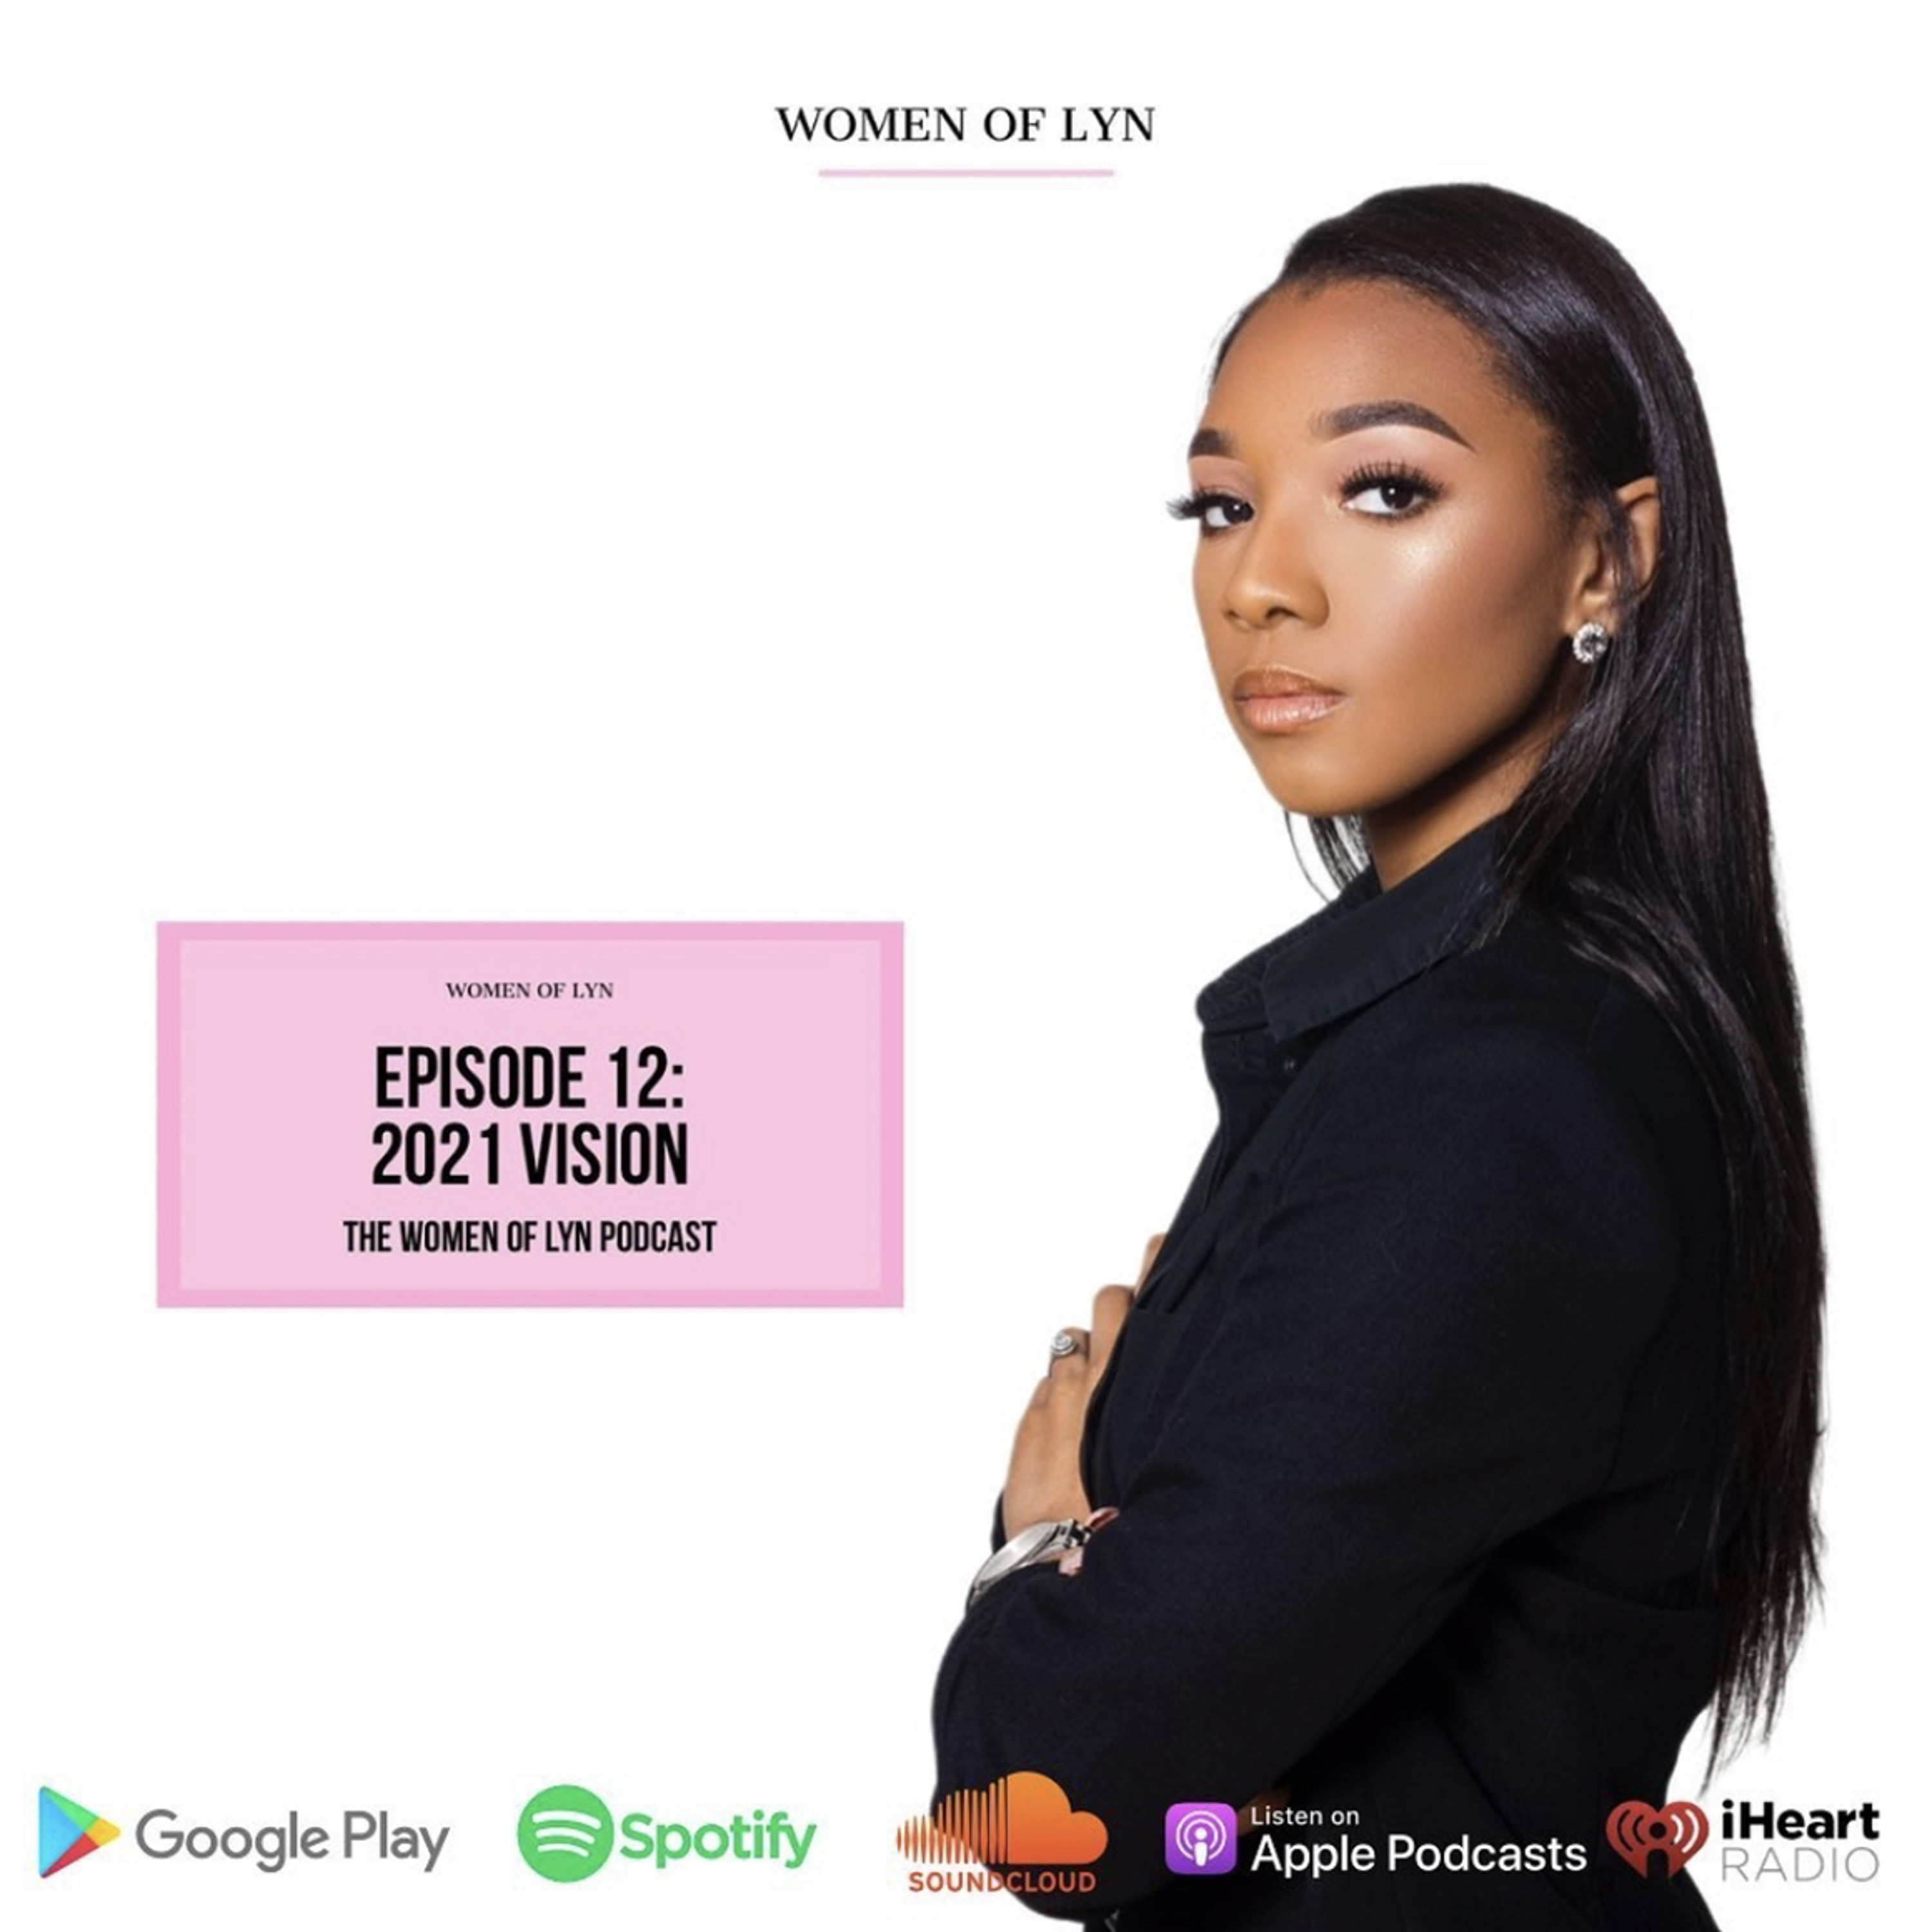 Episode 12: ”2021 Vision”